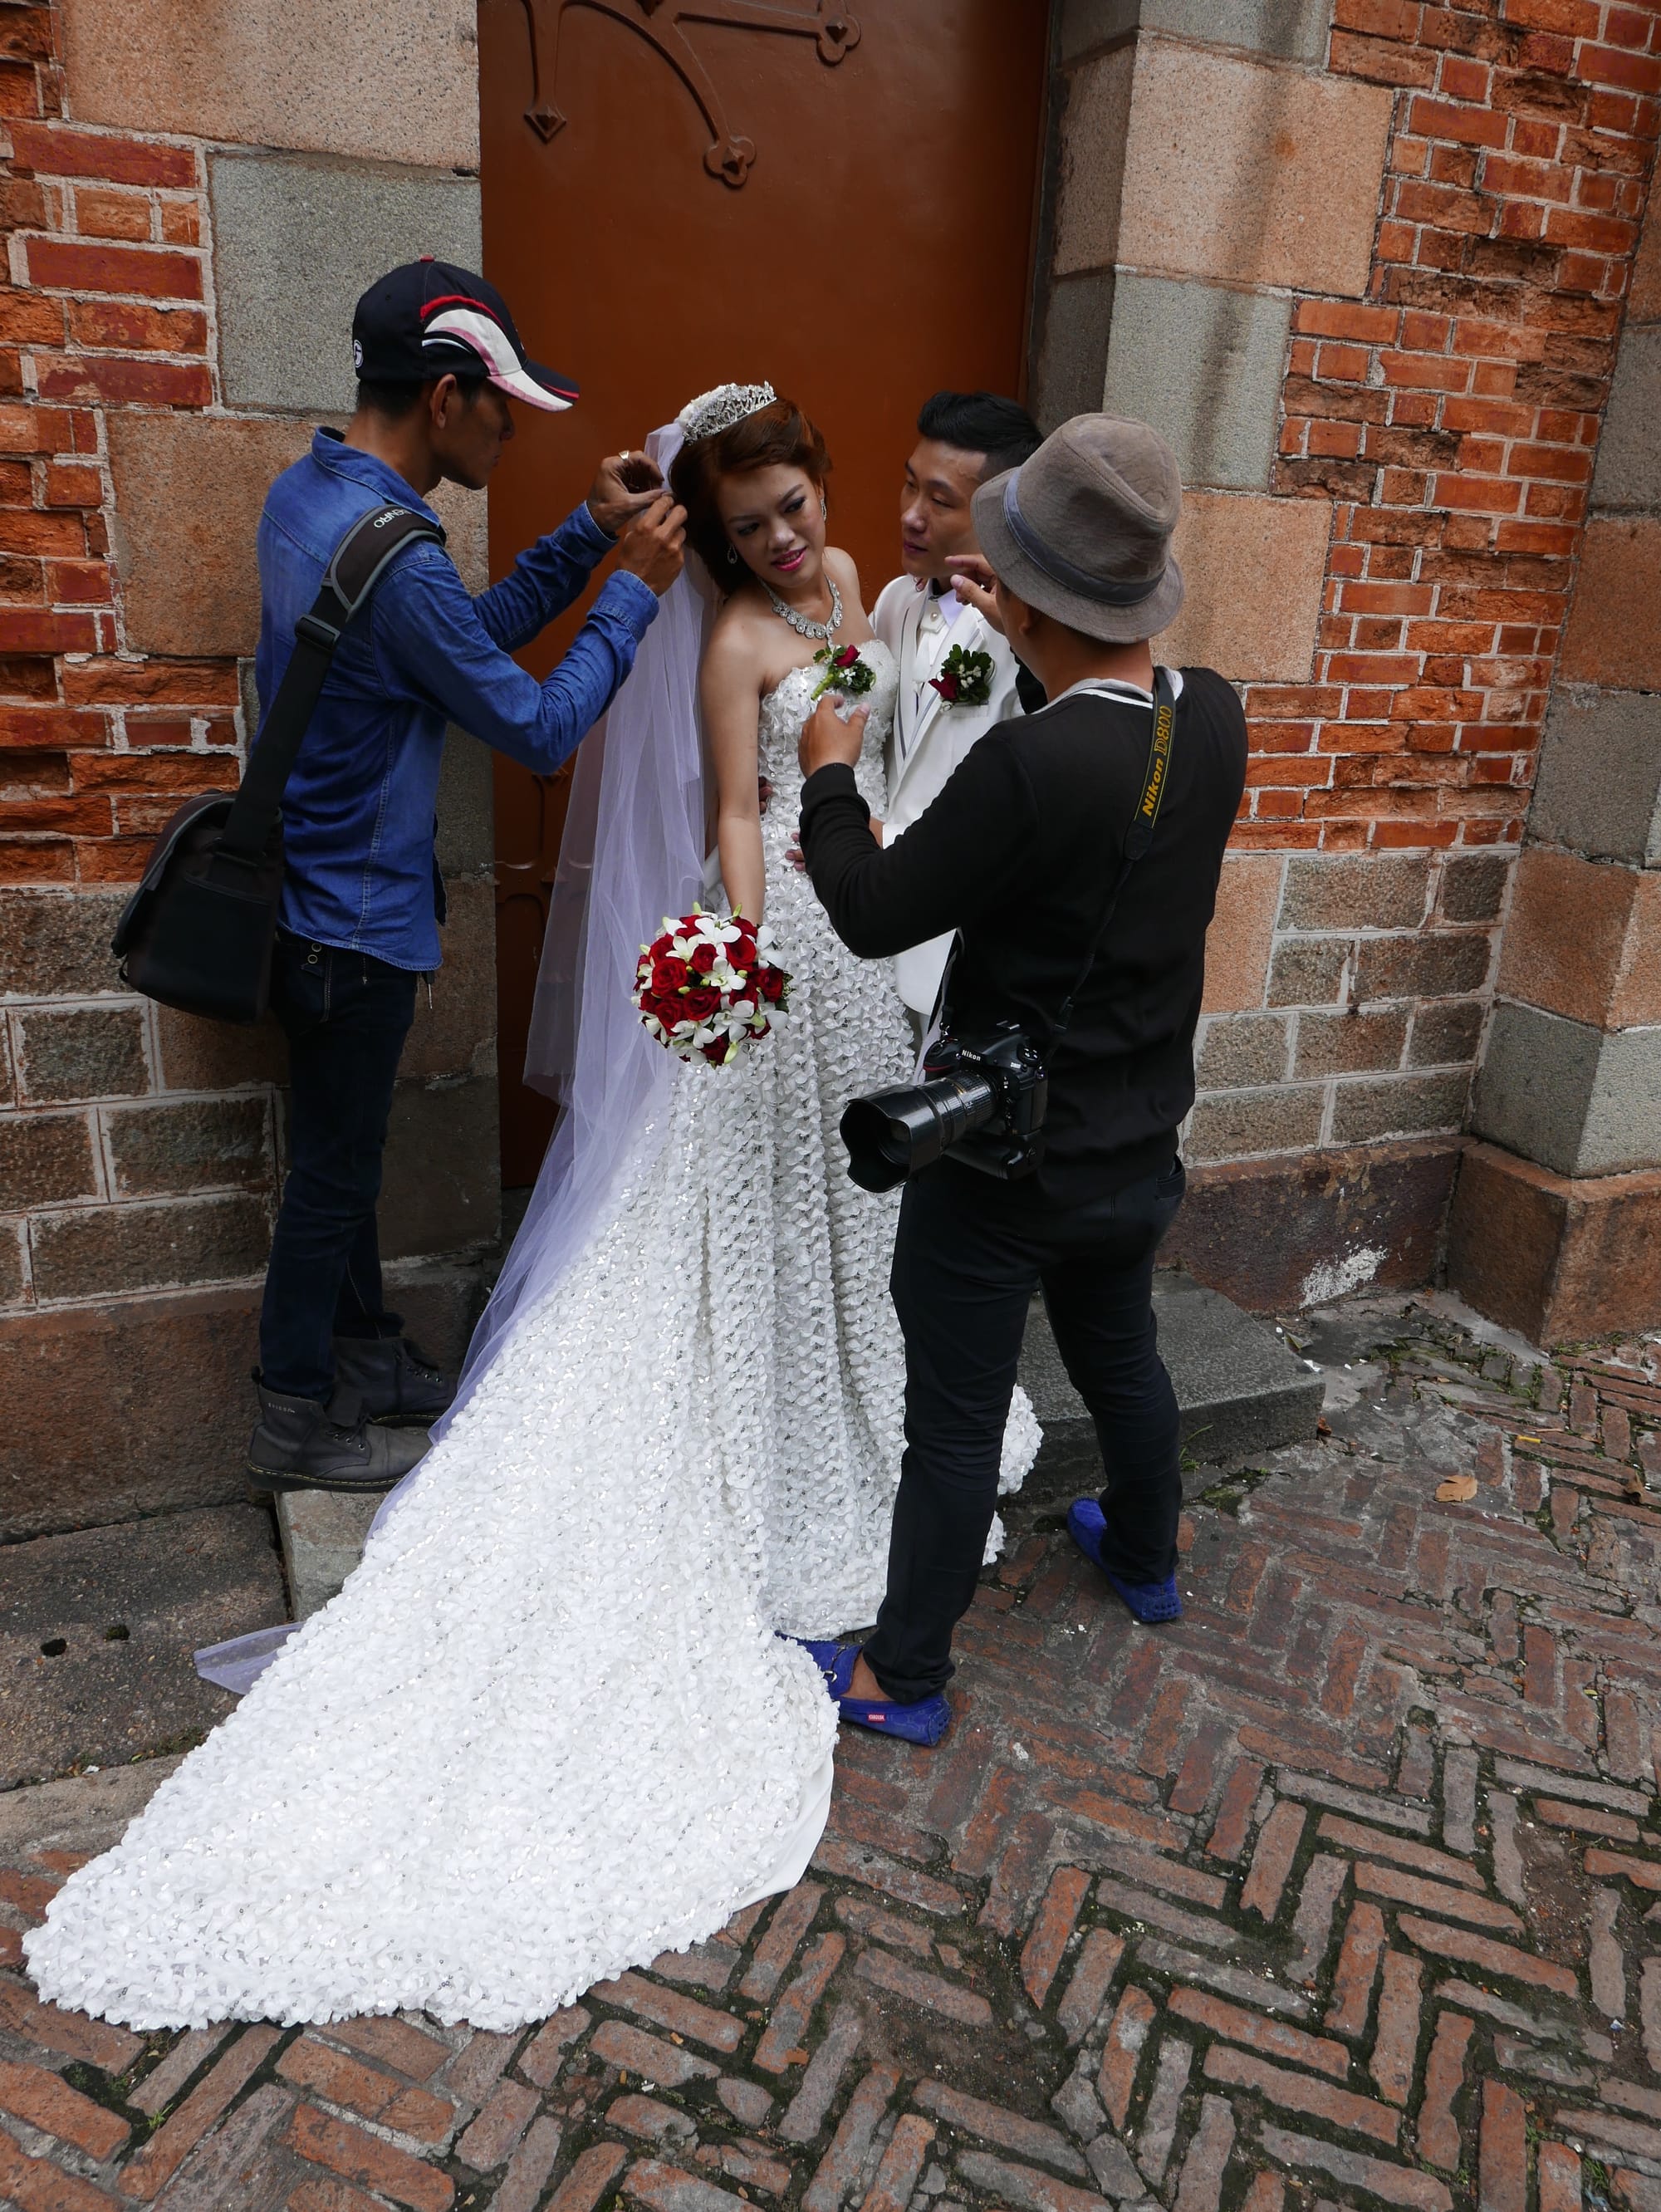 Photo by Author — wedding photoshoot at the Nhà Thờ Đức Bà Sài Gòn (Saigon Notre-Dame Basilica) — photos from around Ho Chi Minh City (Saigon), Vietnam